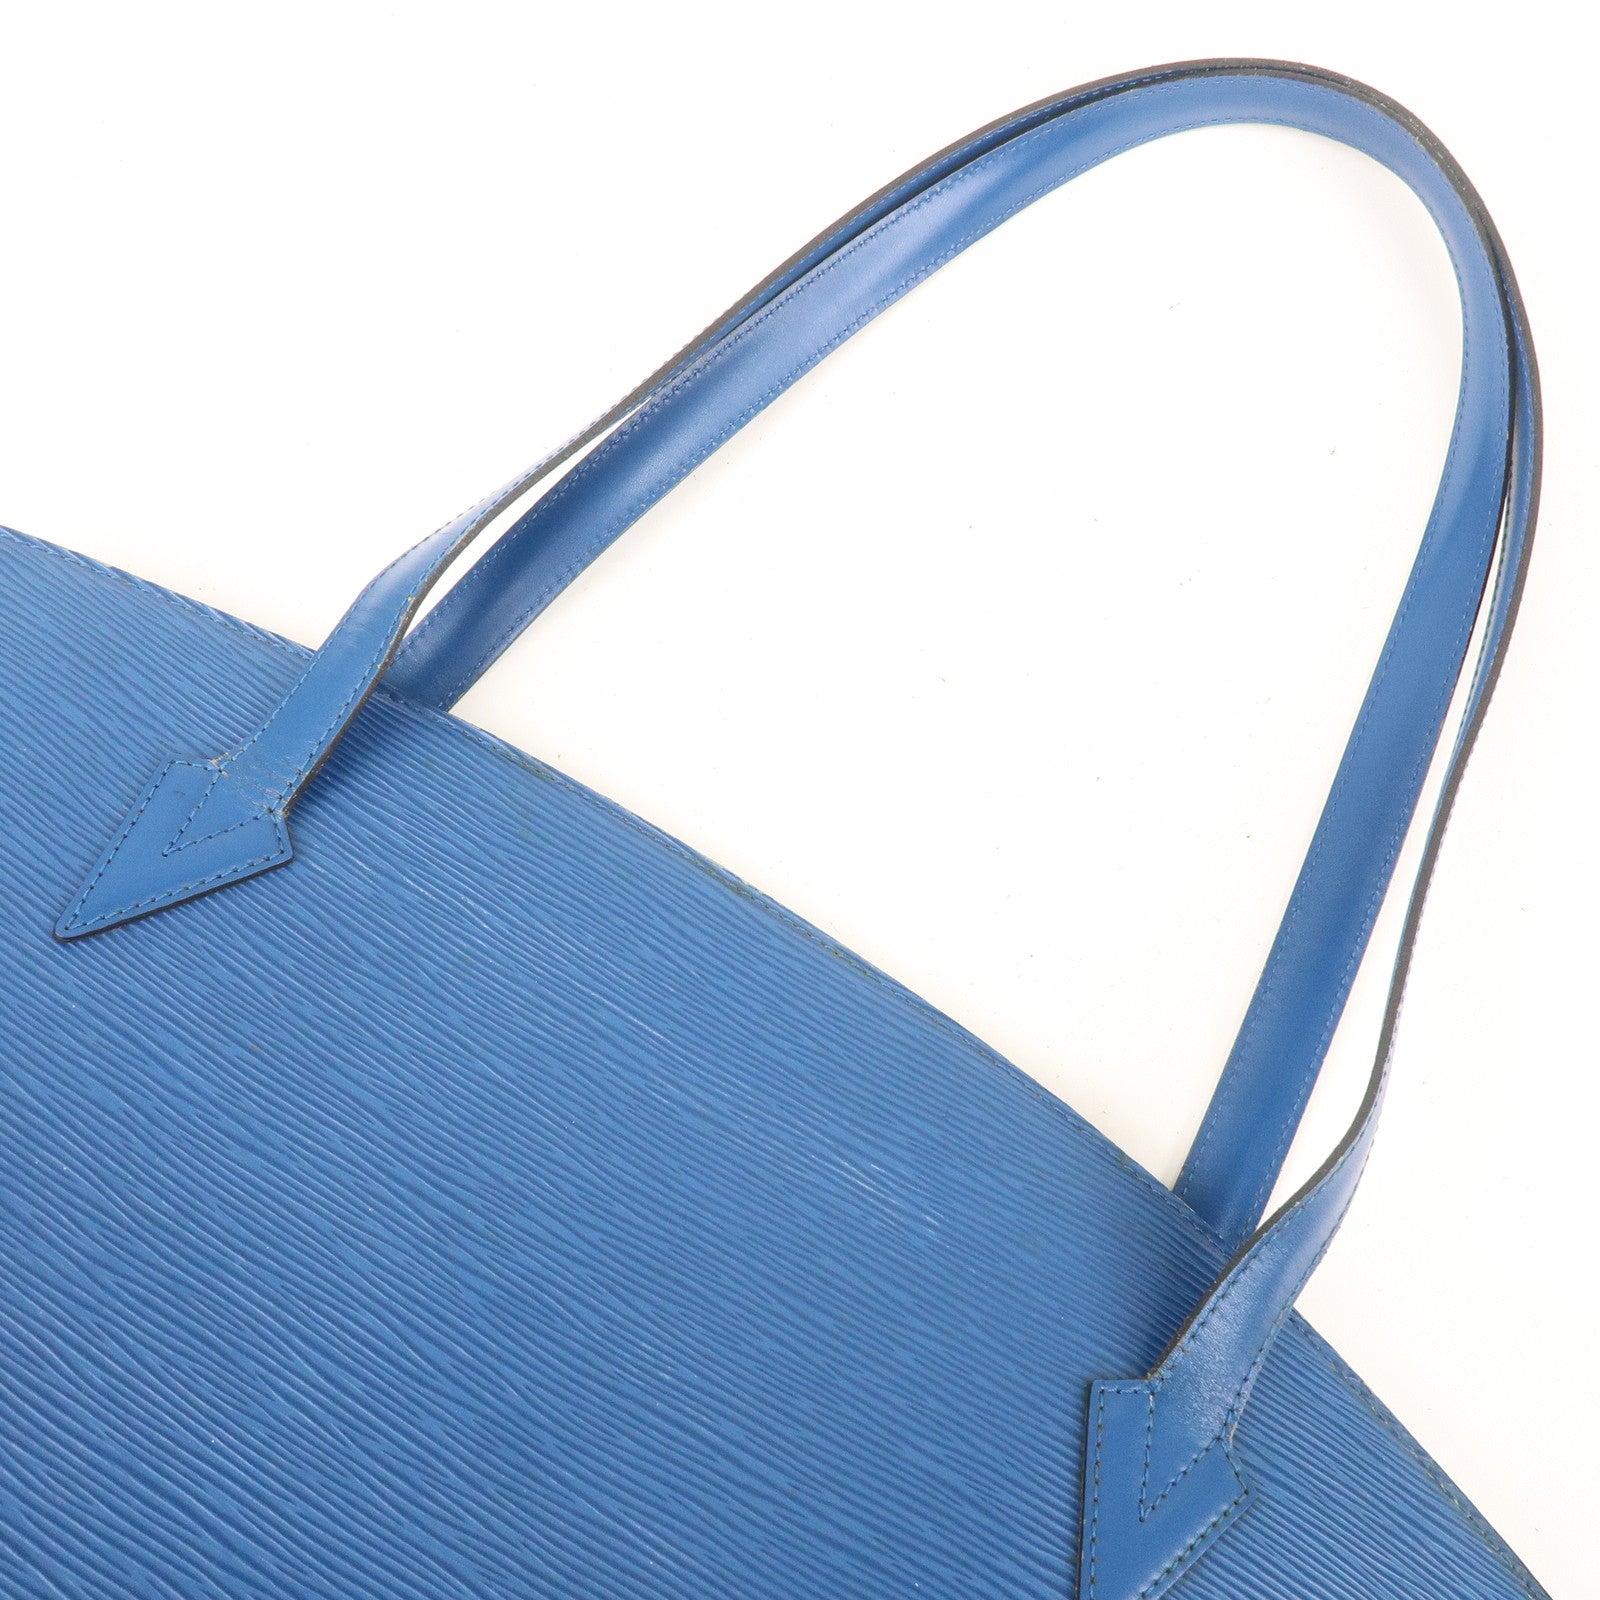 LOUIS VUITTON Saint Jacques Long Strap Blue EPI Leather Handbag Shoulder Bag